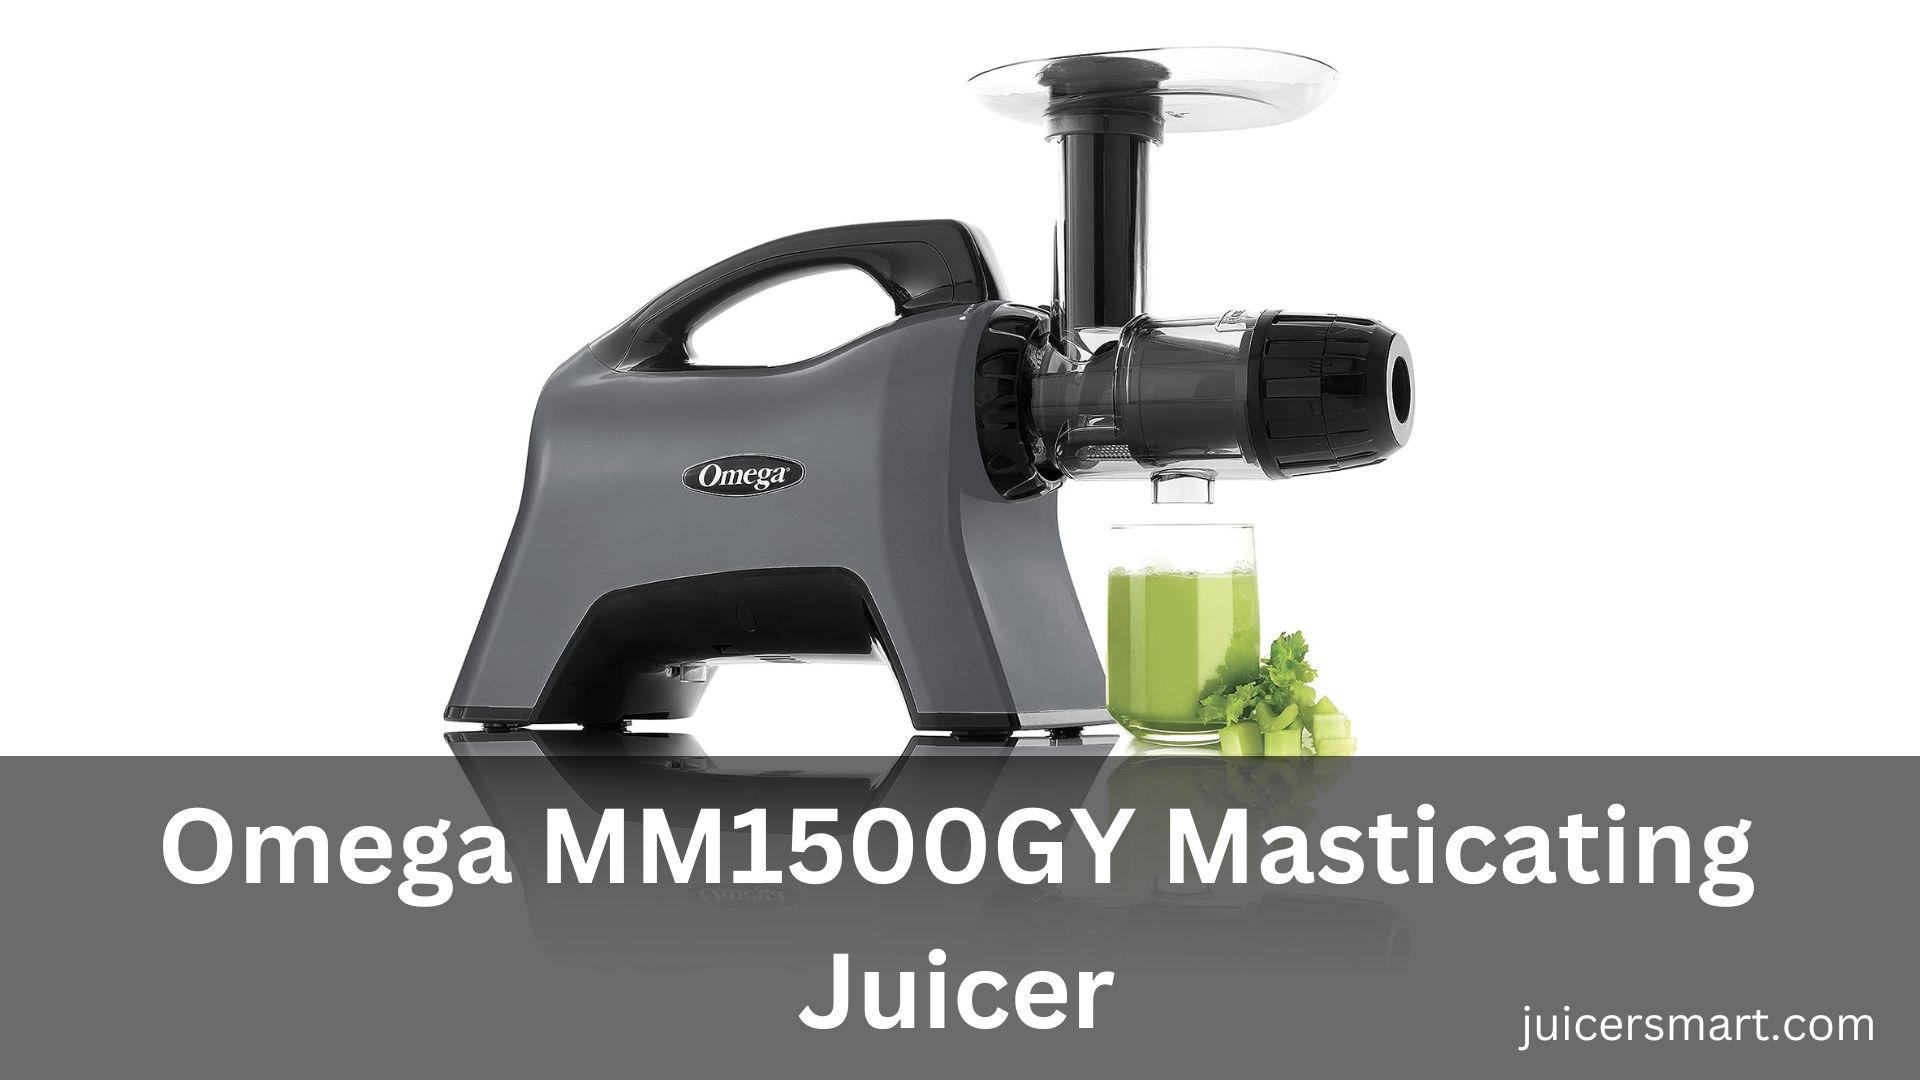 Omega MM1500GY Masticating Juicer